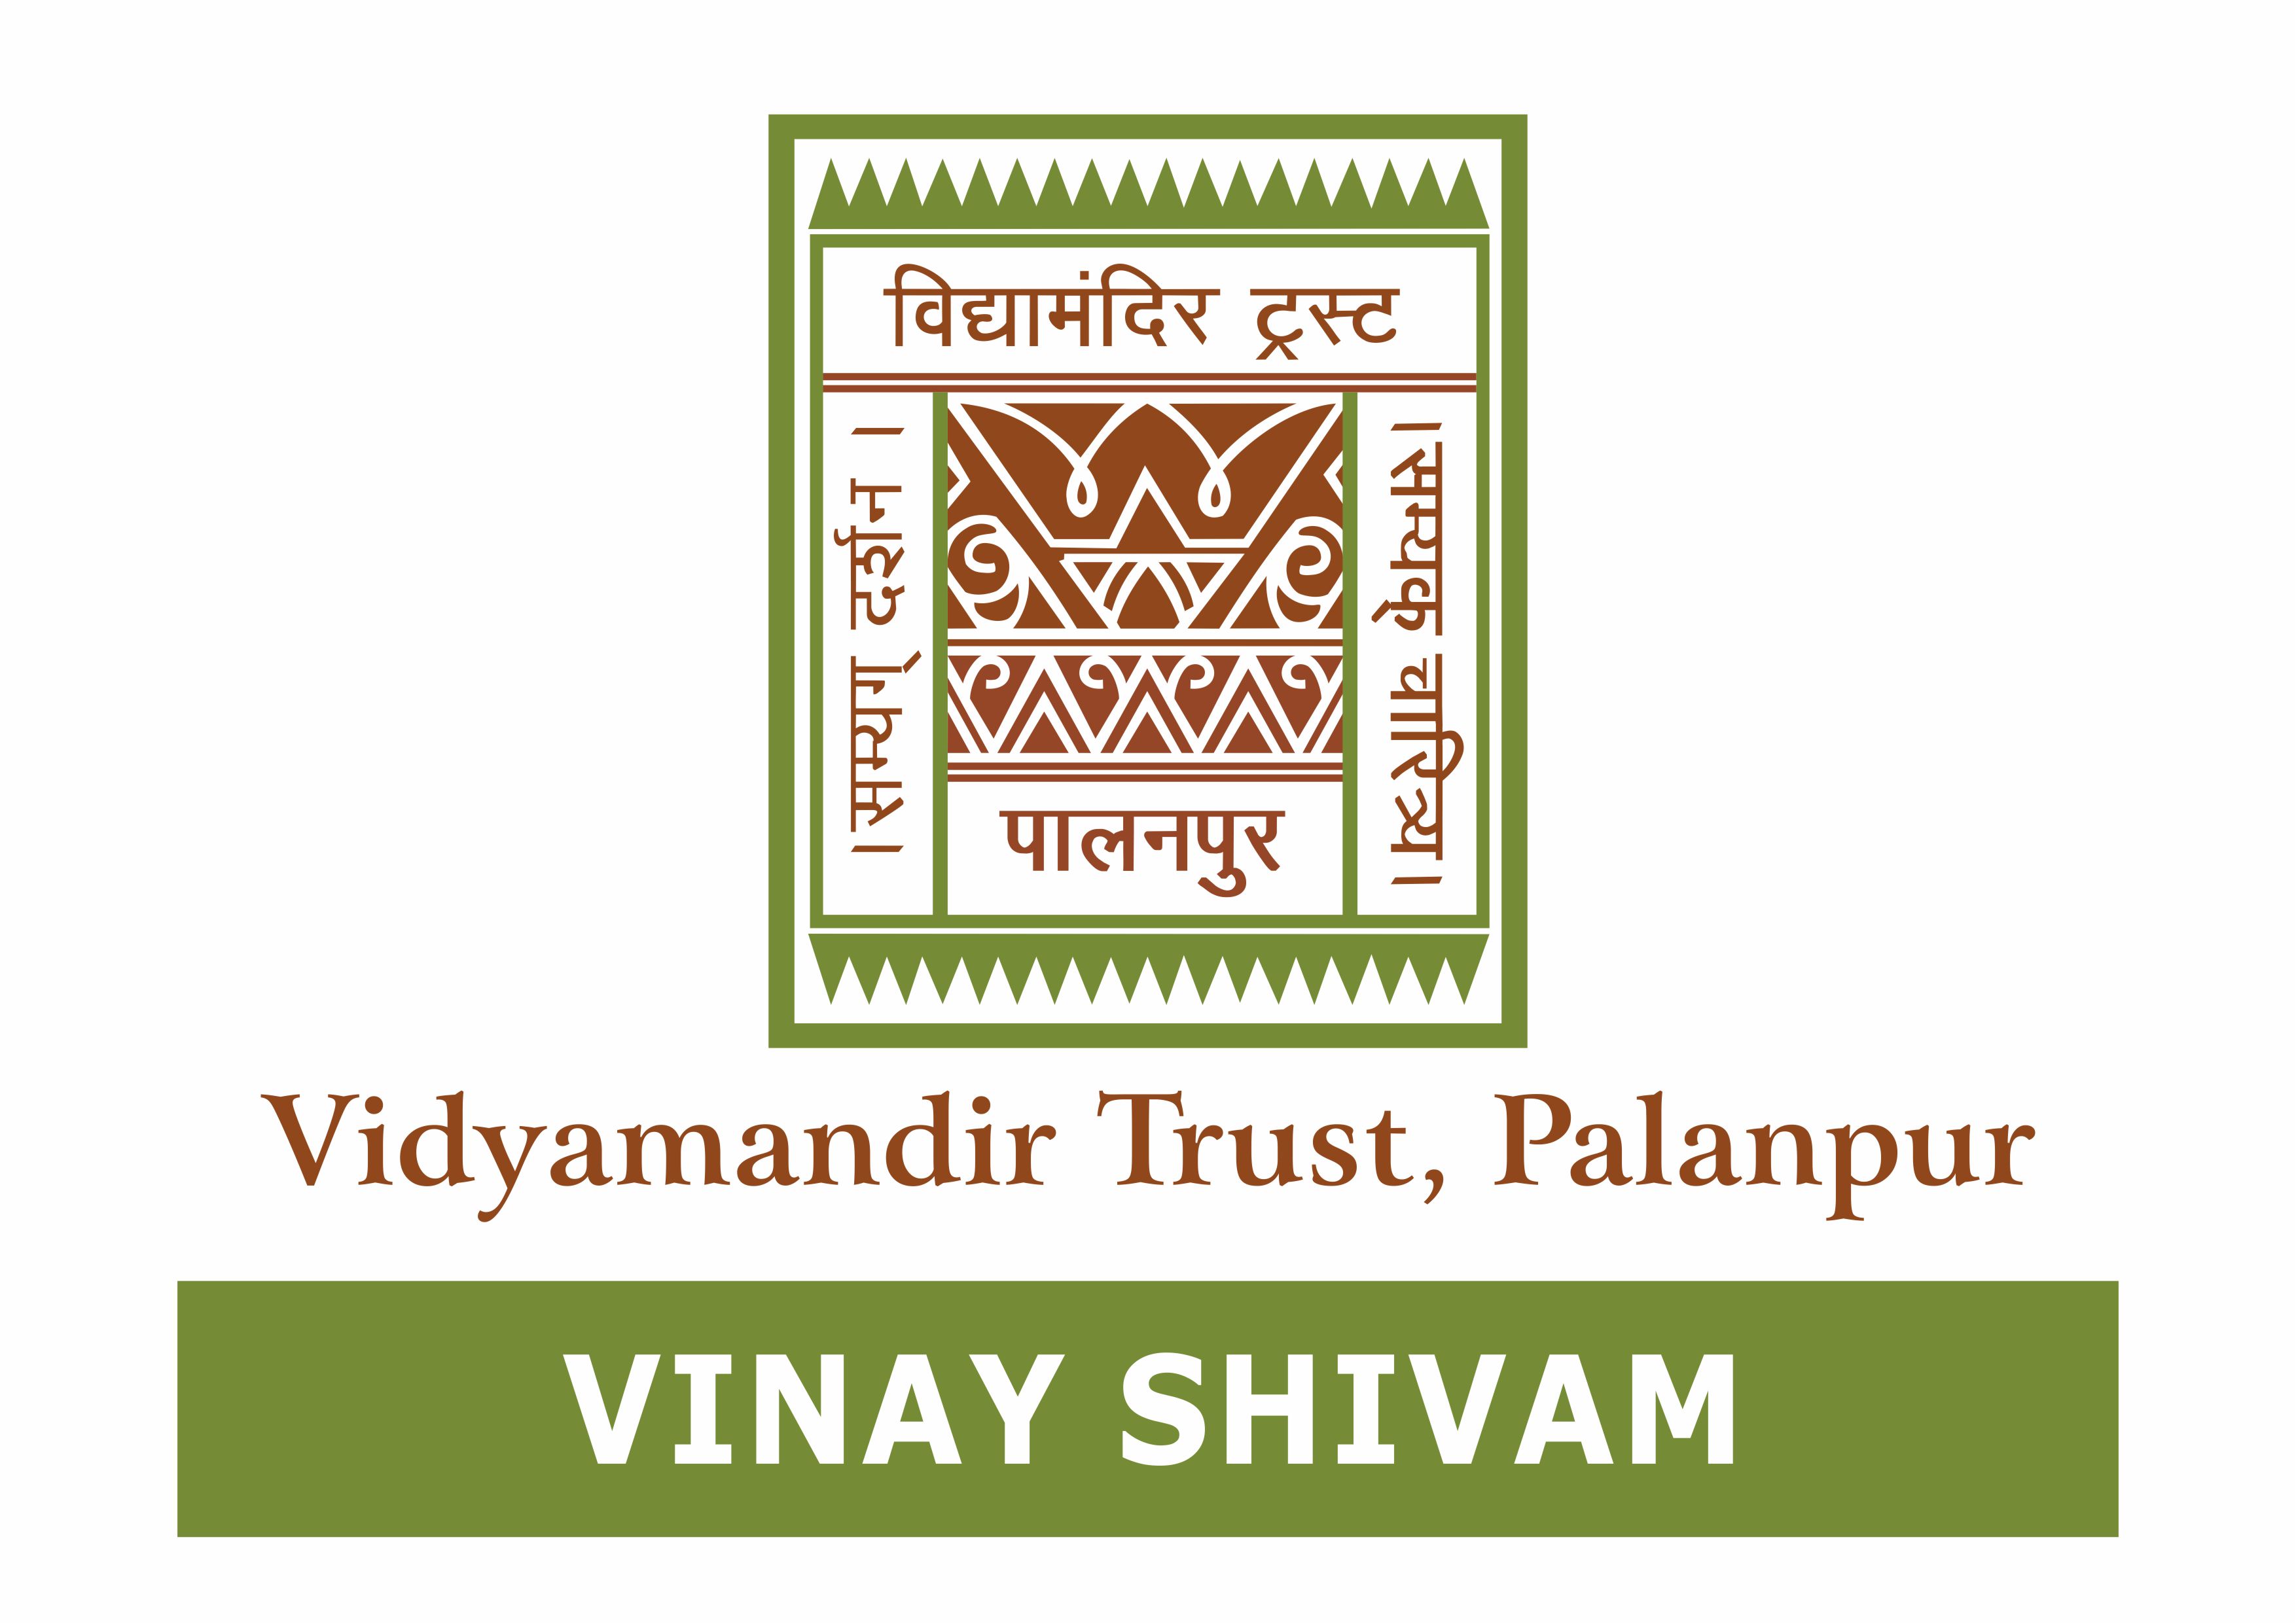 Vinay Shivam - Vidyamandir Trust, Palanpur